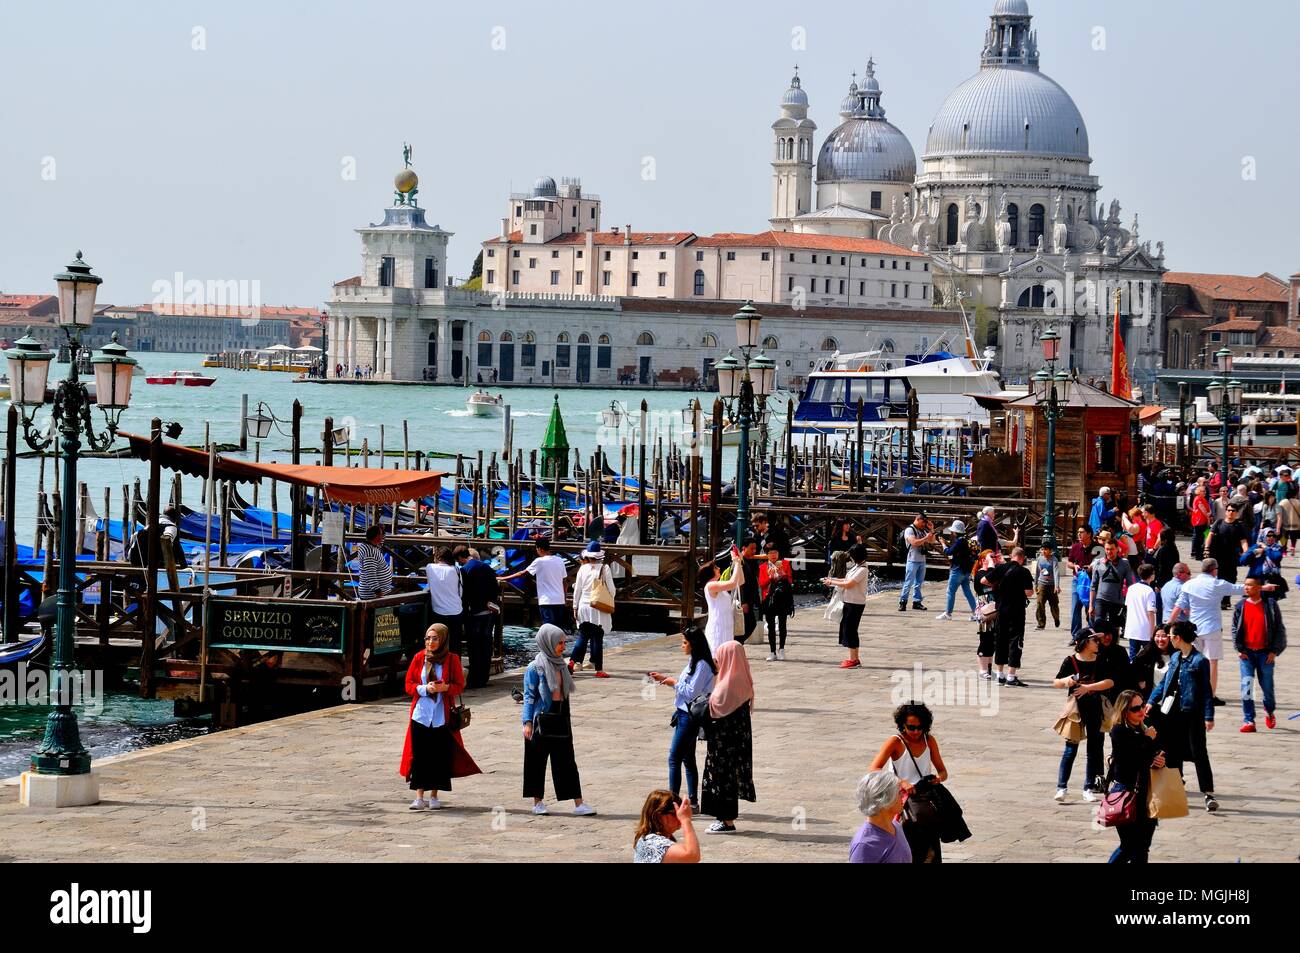 Canal Grande Venedig Stockfoto